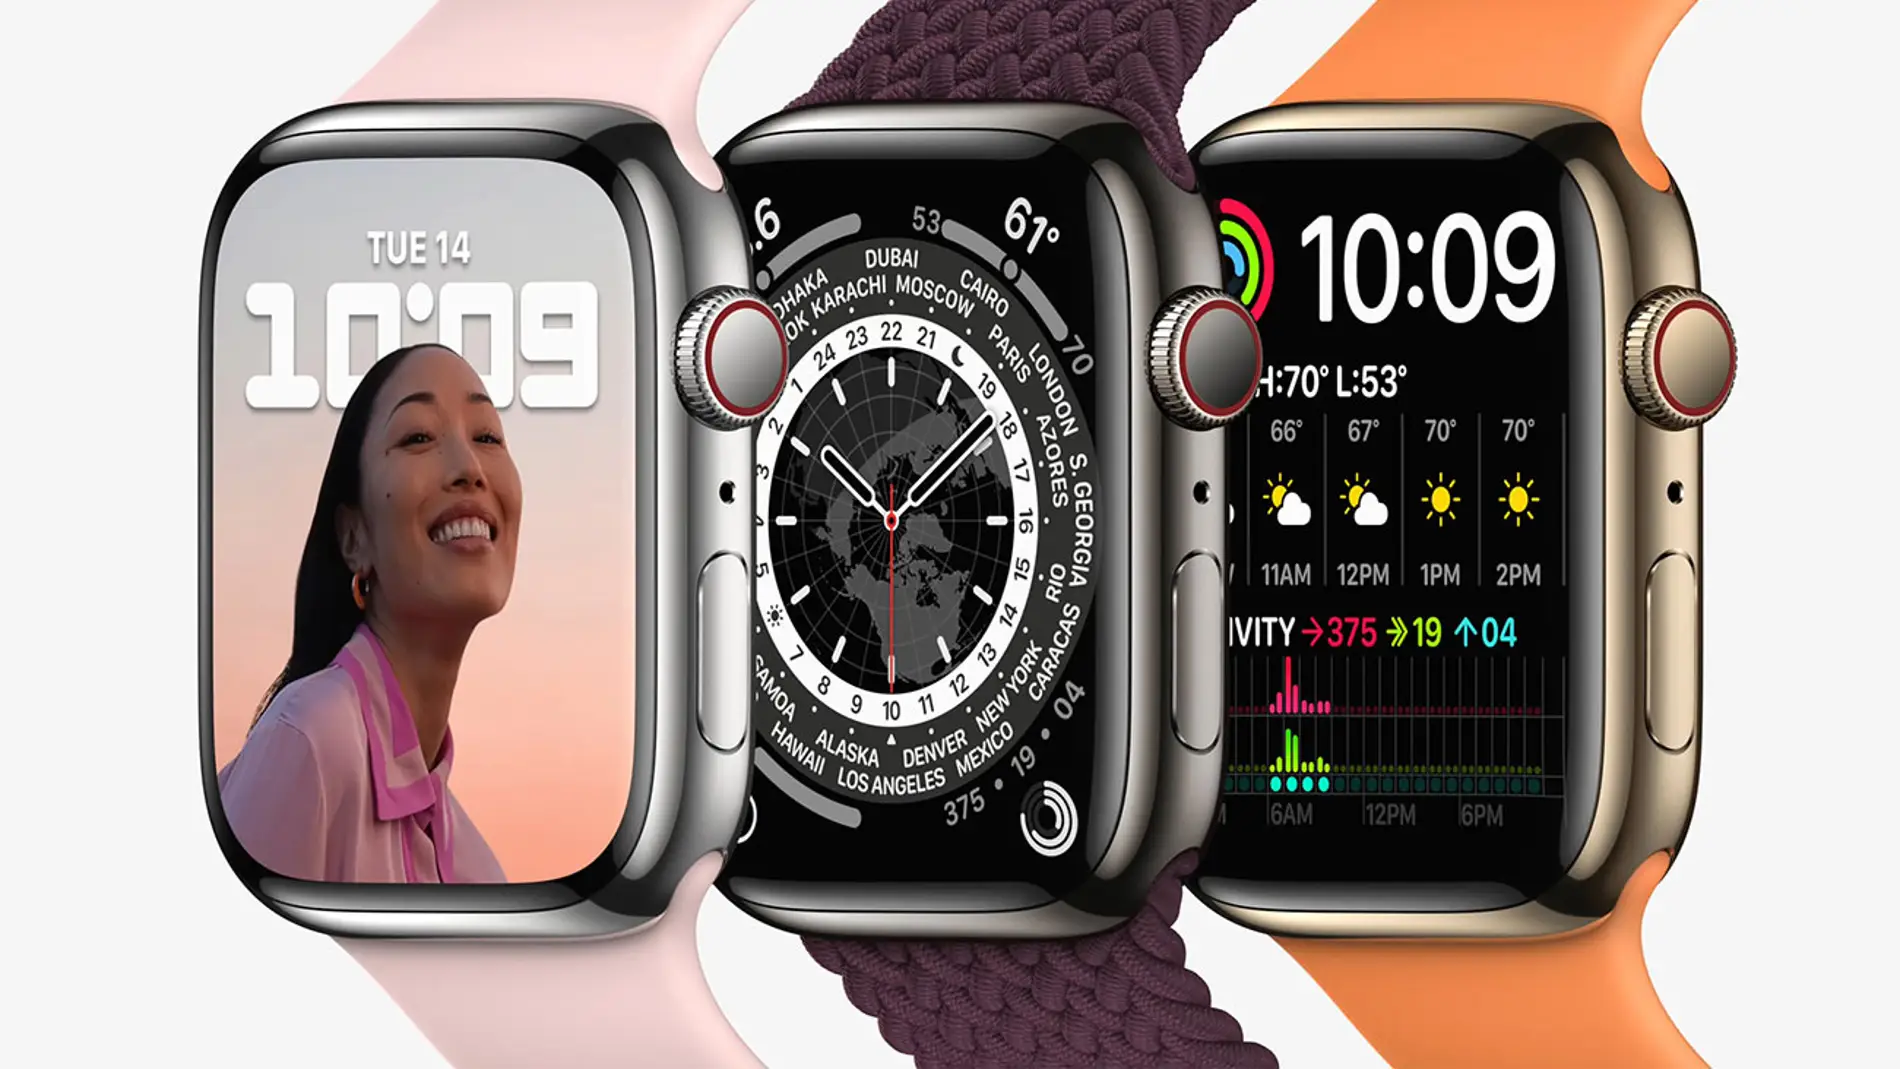 El nuevo Apple Watch Series 7 estrena una pantalla más grande